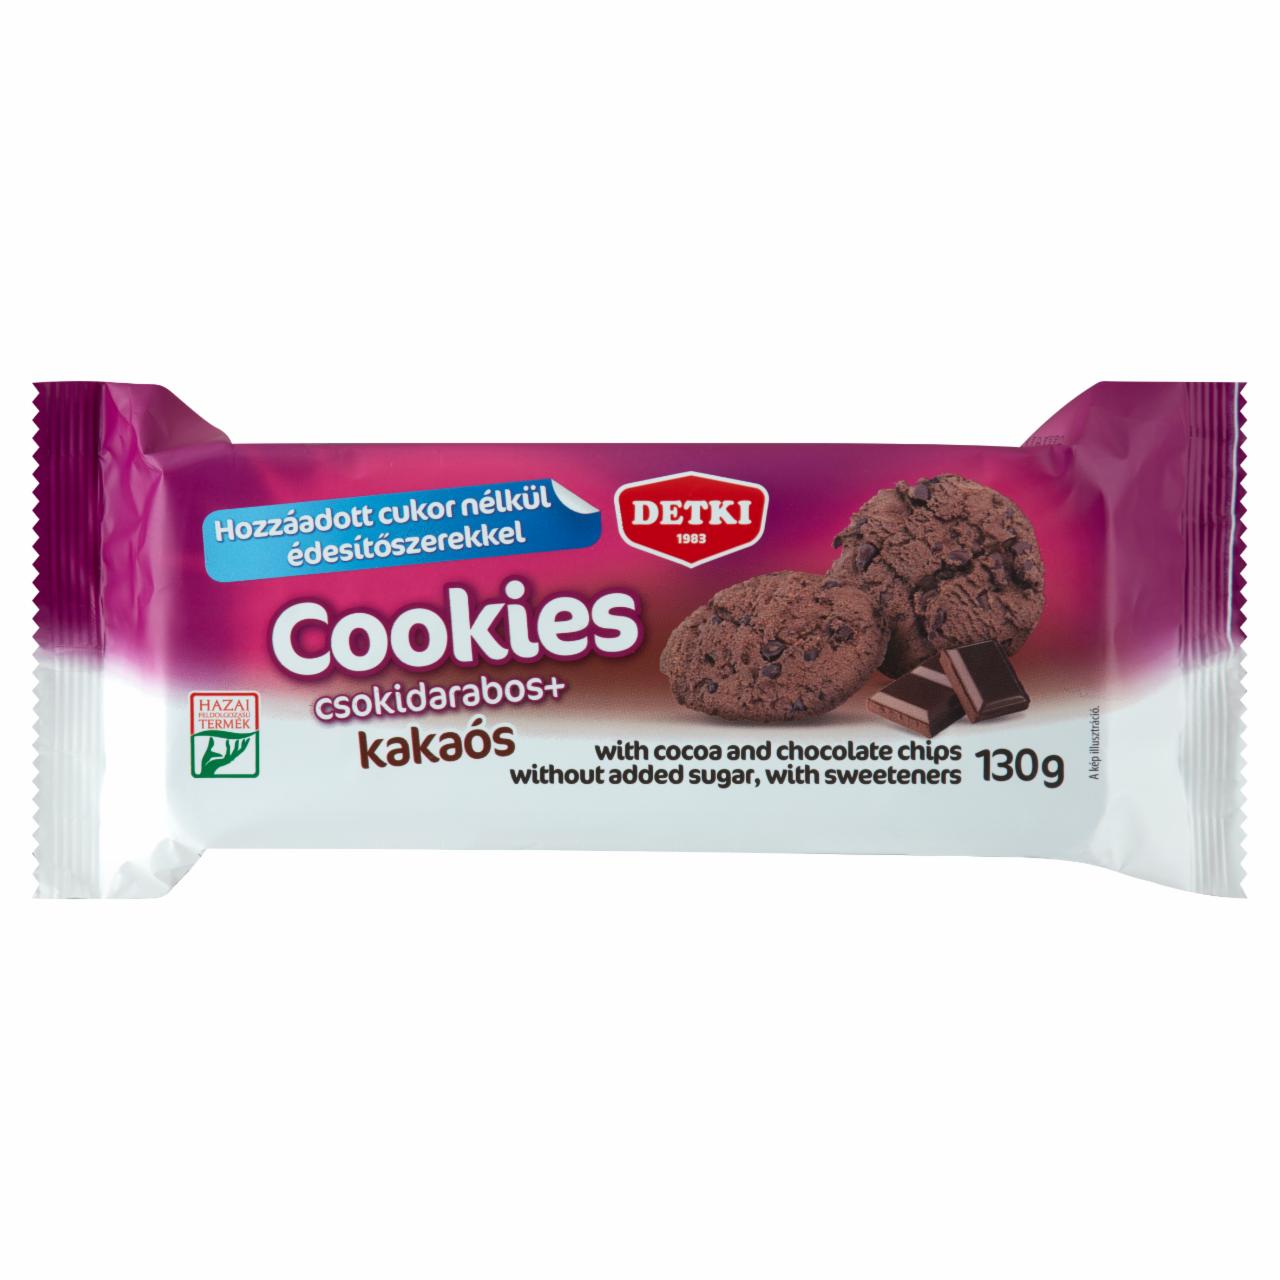 Képek - Detki Vital Cookies kakaós omlós keksz csokoládé darabokkal és édesítőszerekkel 130 g